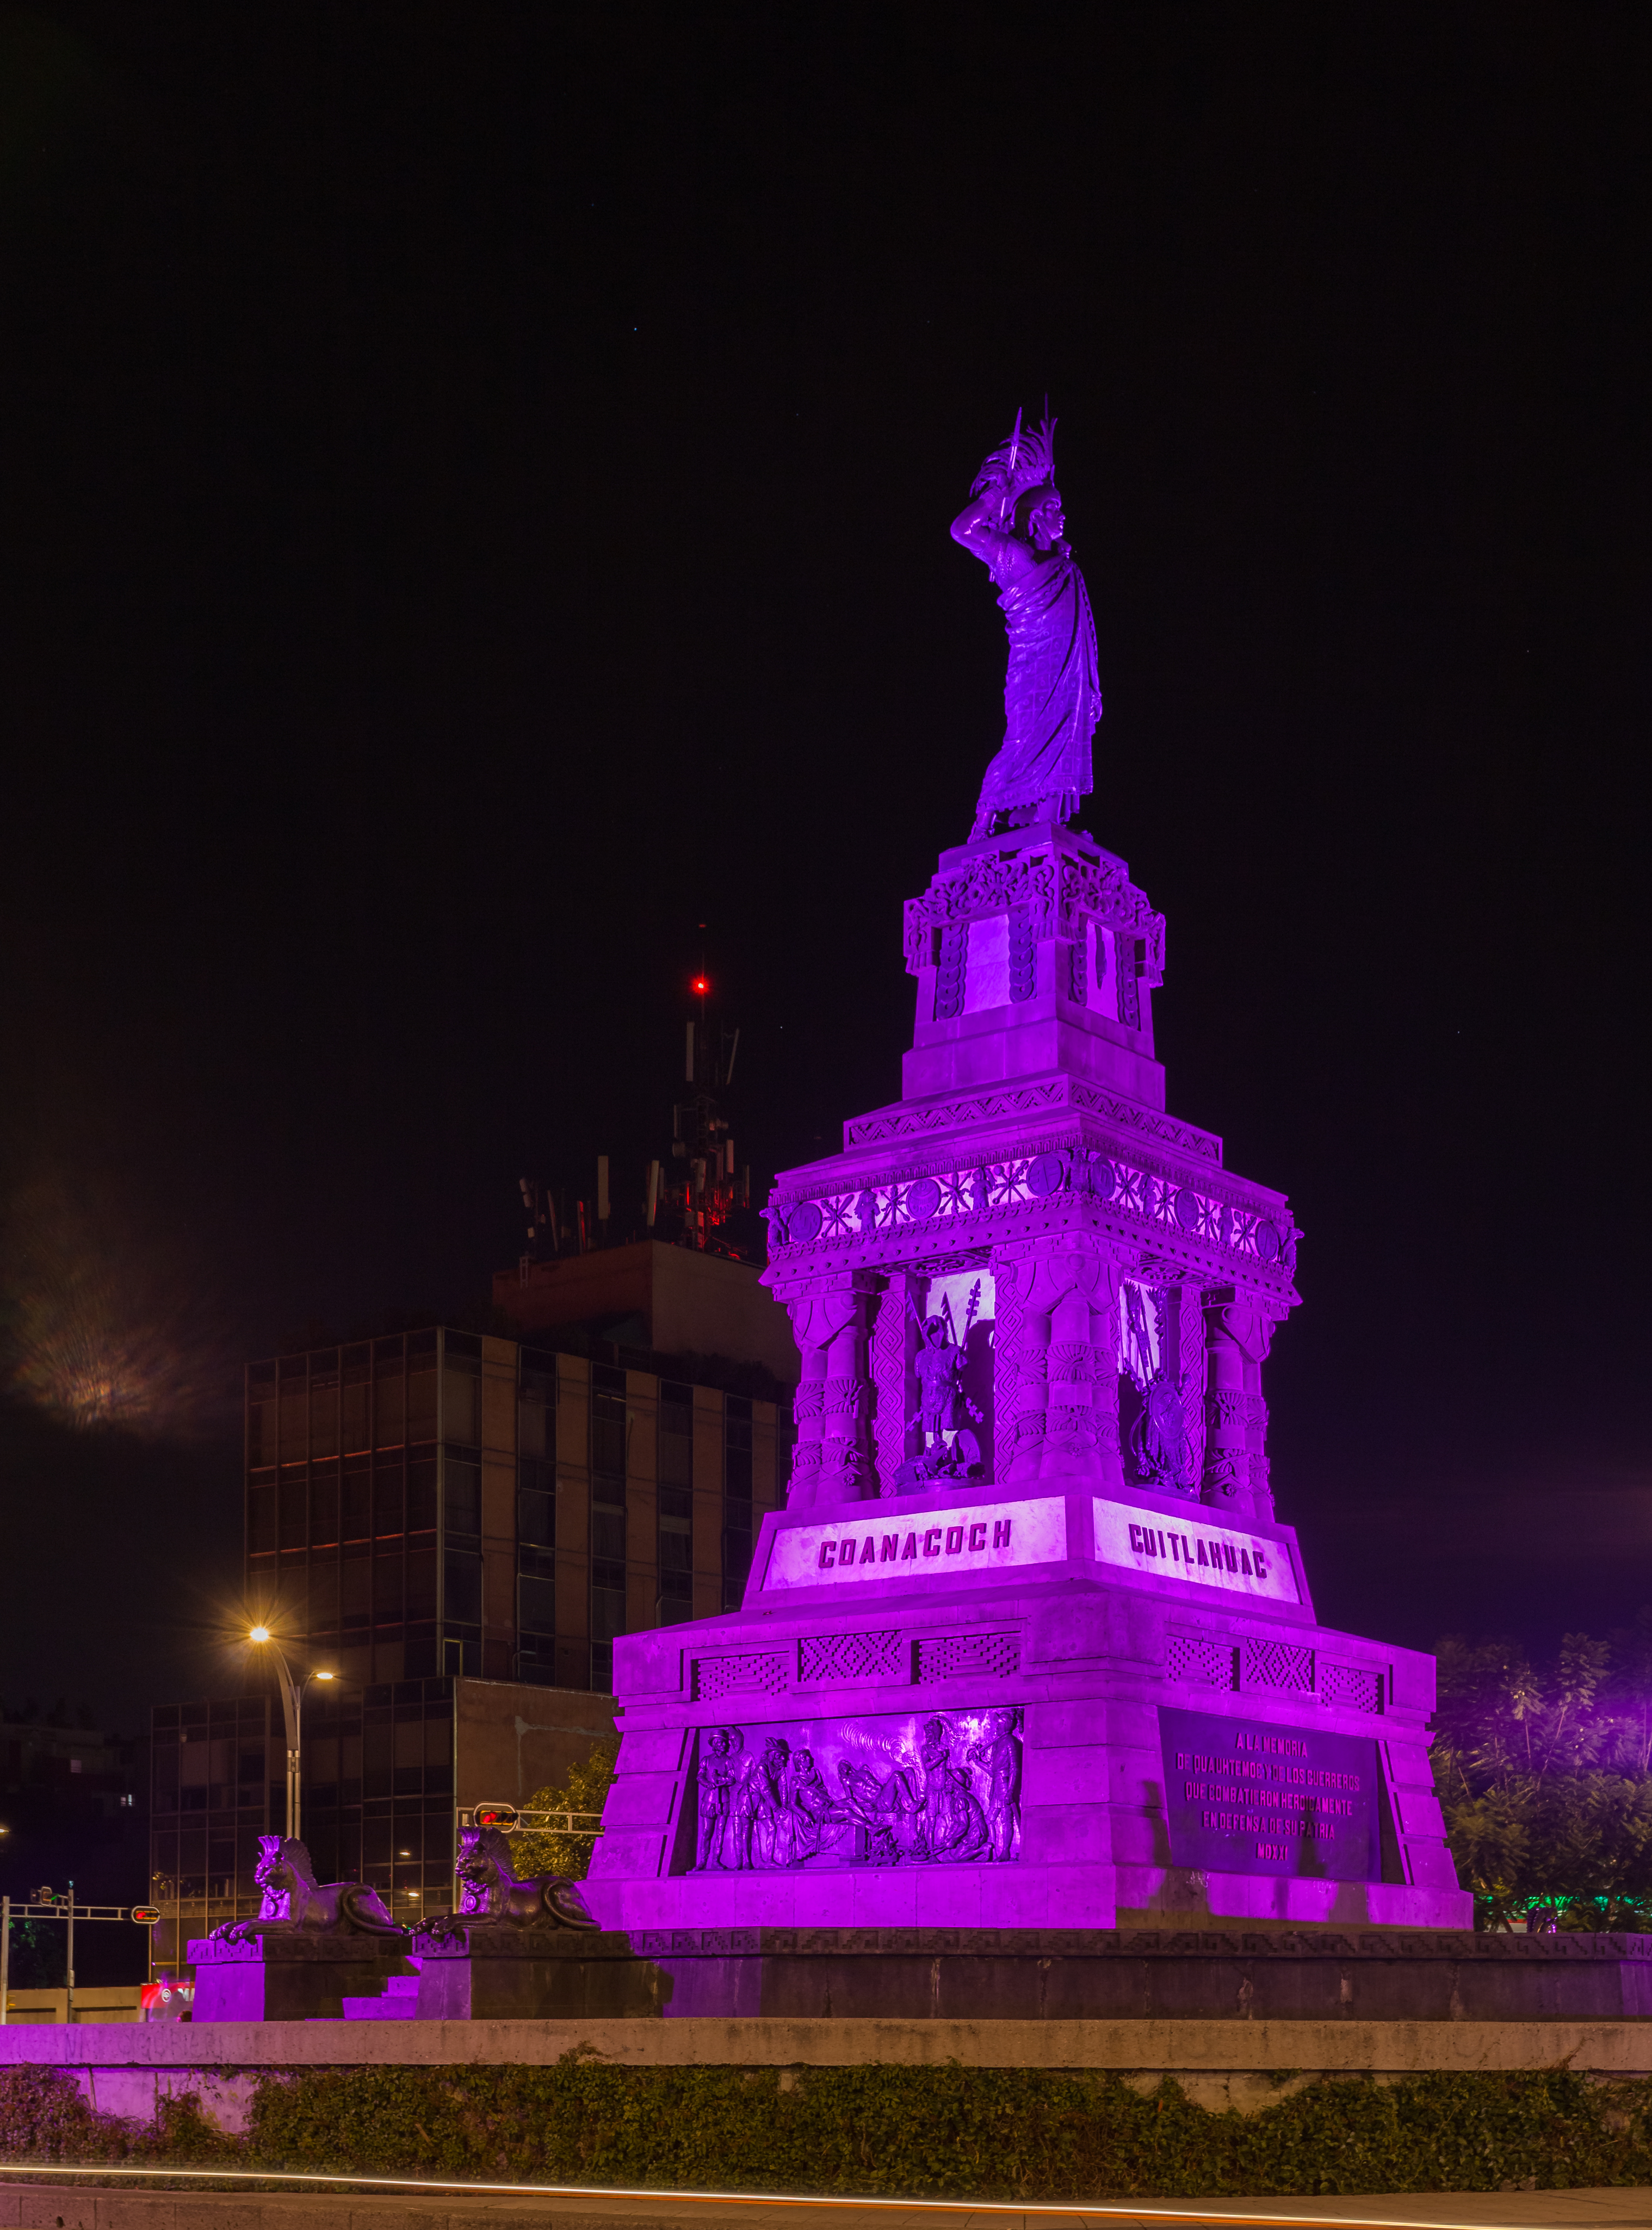 Monumento a Cuauhtémoc, México D.F., México, 2014-10-13, DD 32